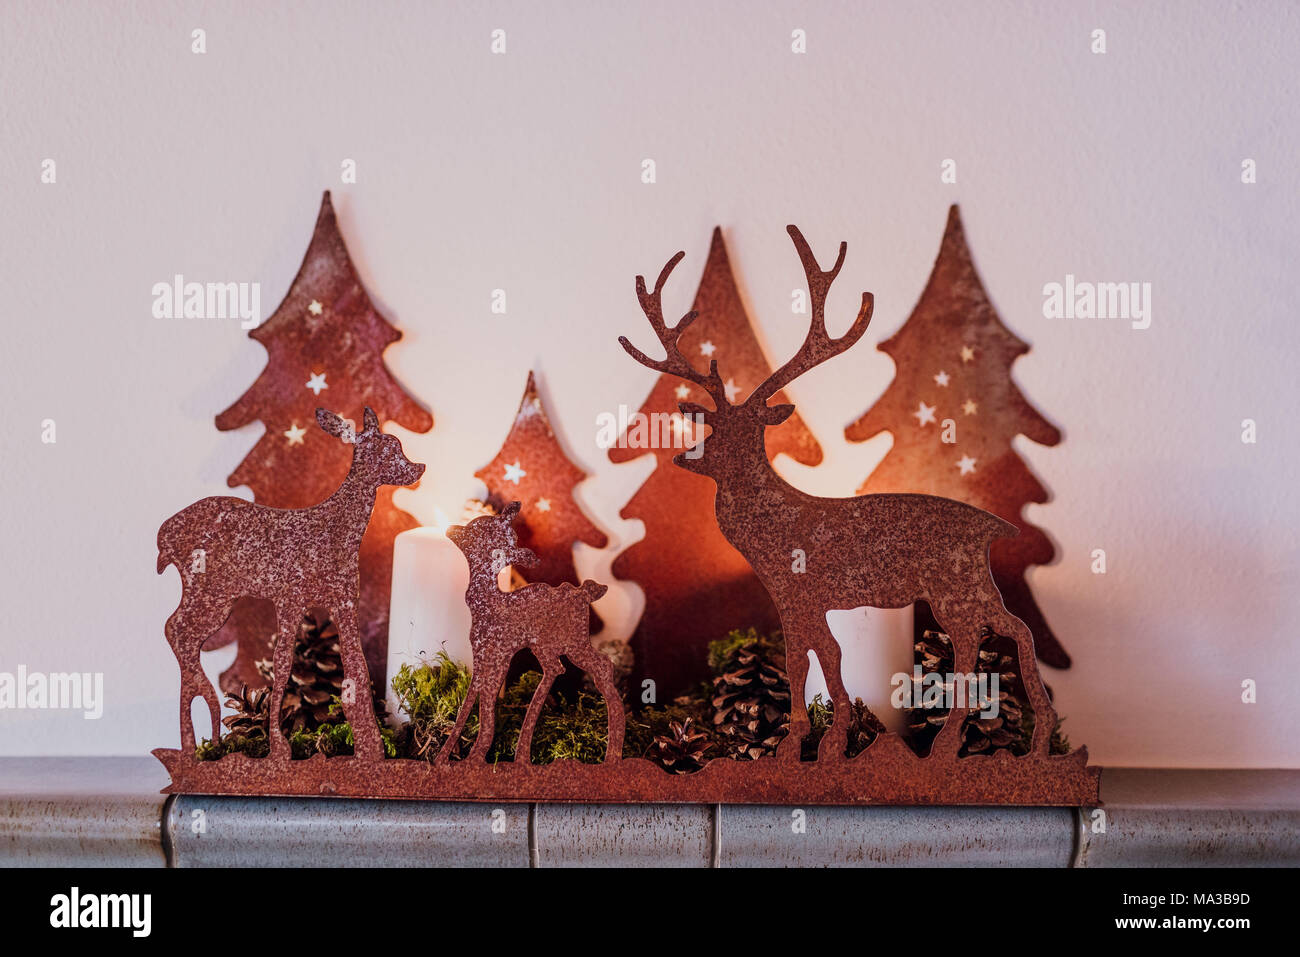 Decoración de invierno,candelabro,ciervos y abetos de la familia a la luz de las velas, Foto de stock